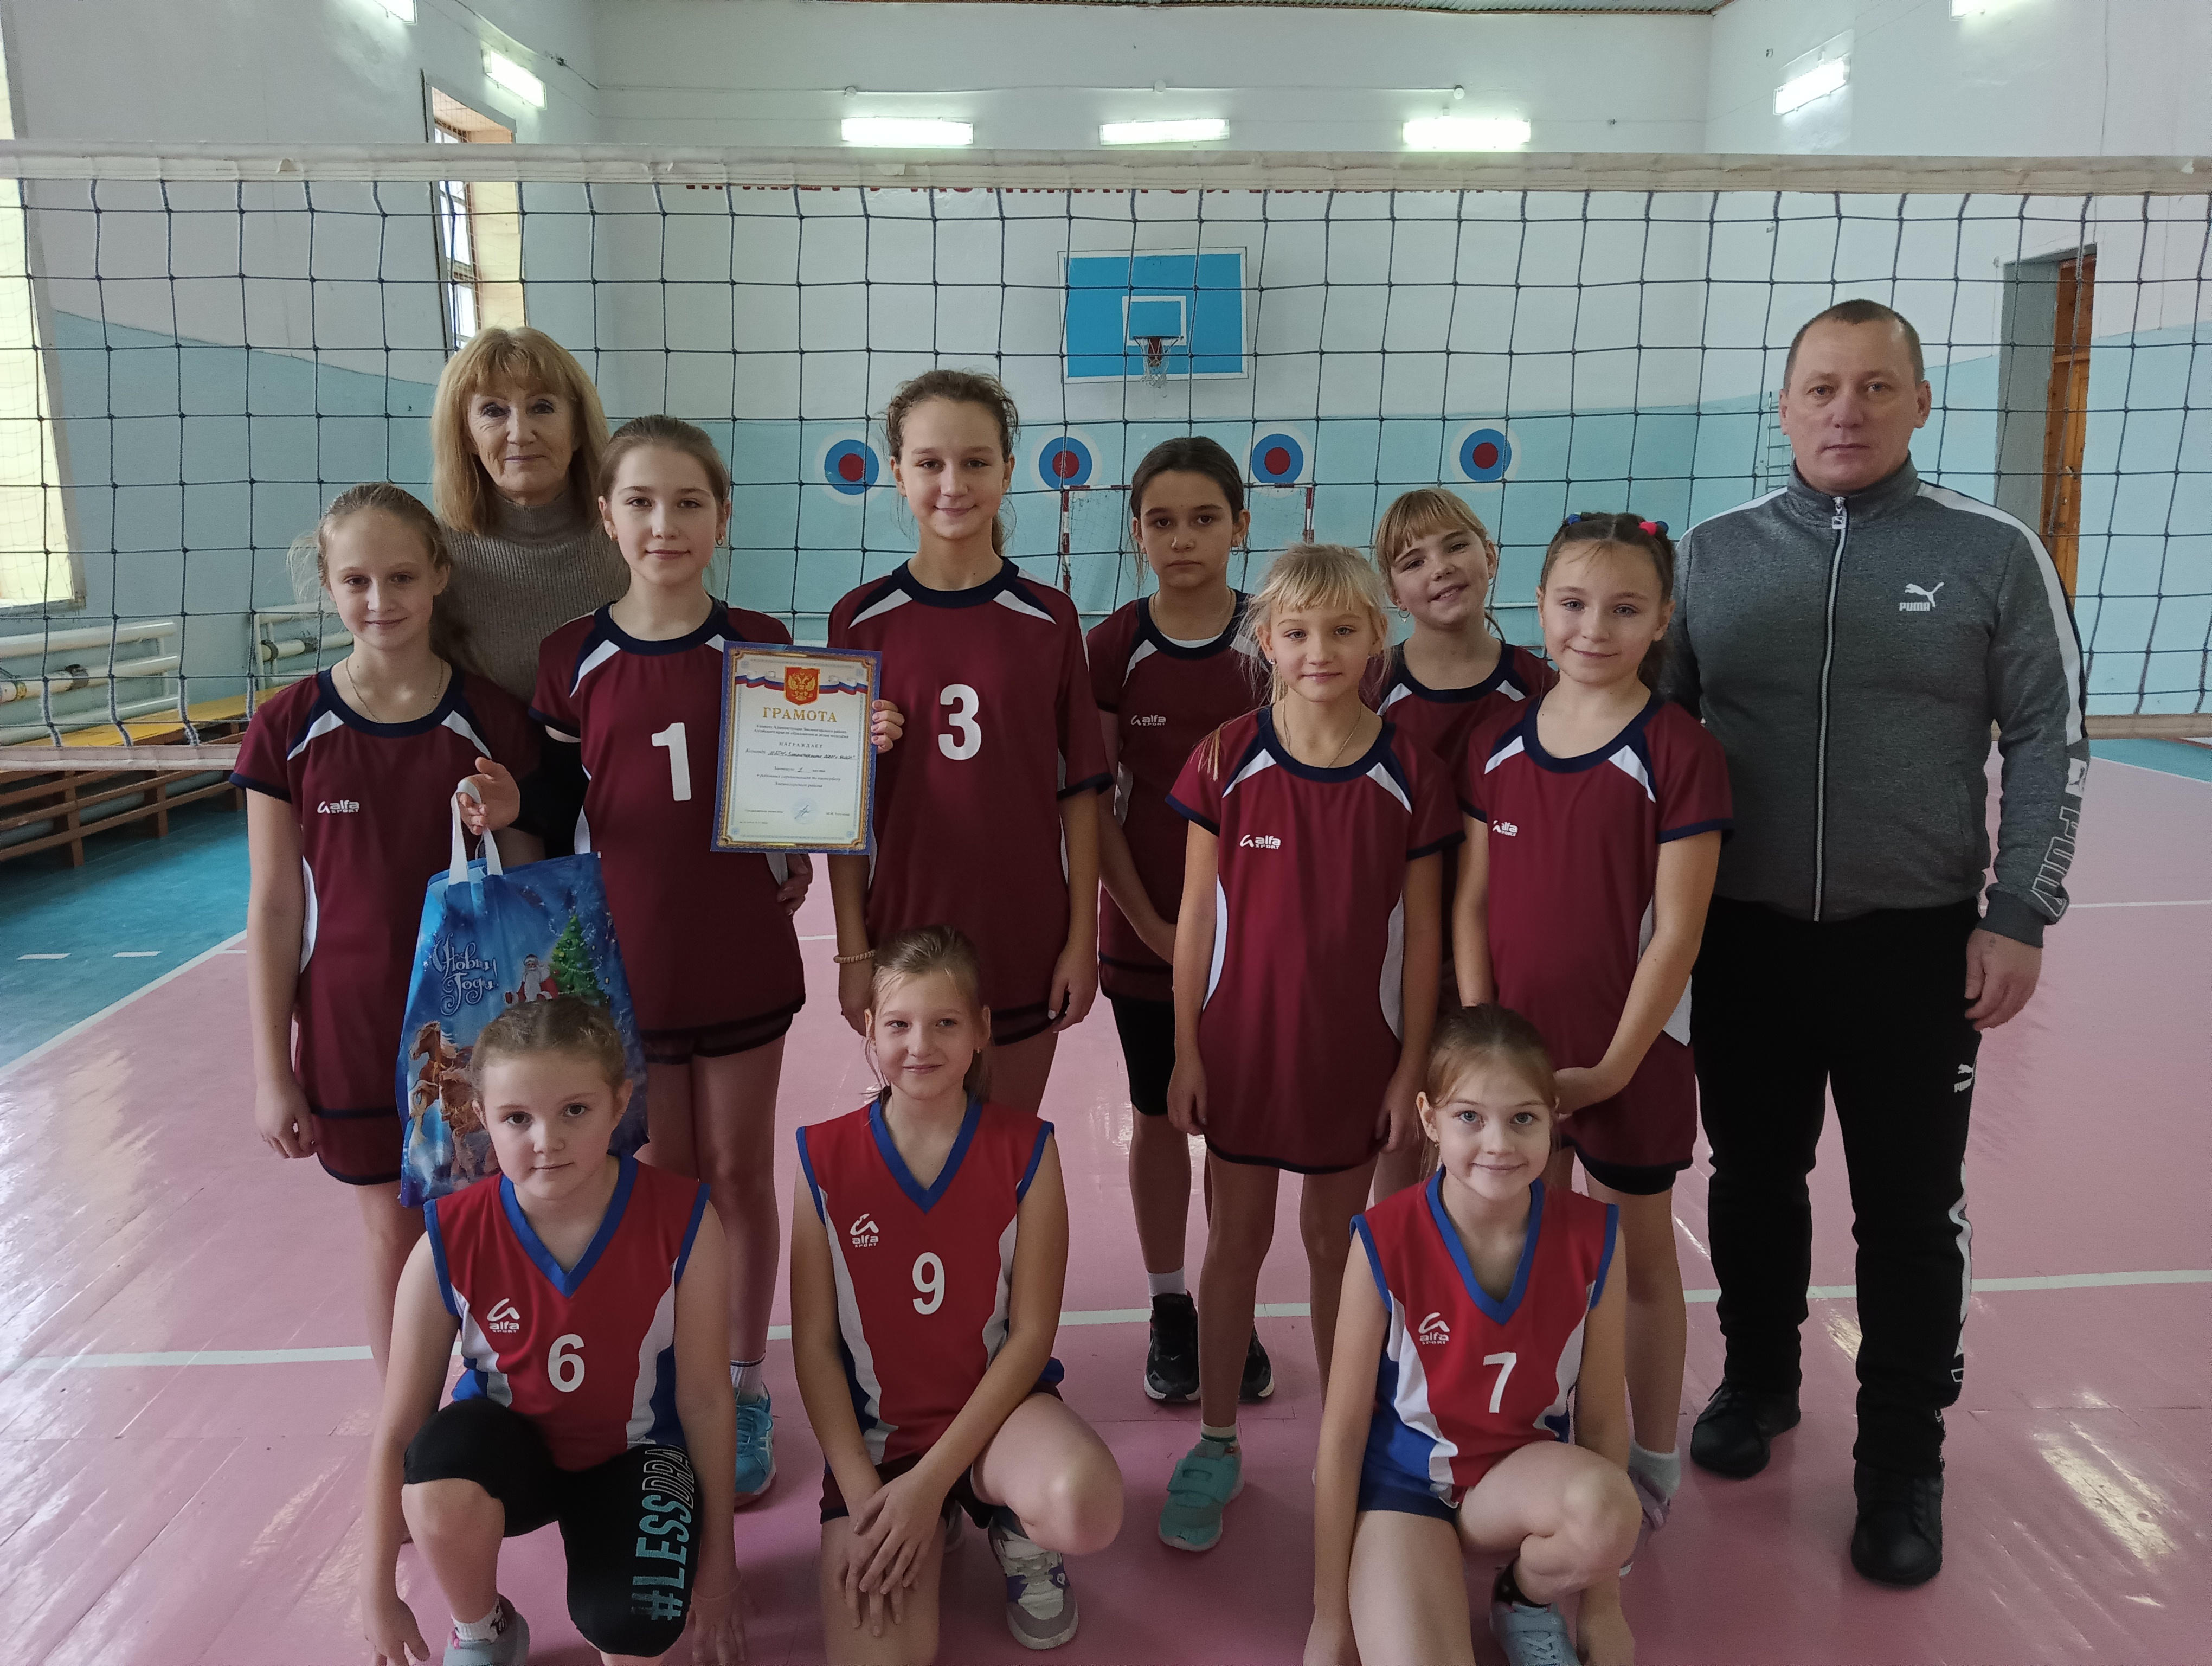 Сегодня на базе спортивной школы состоялись районные соревнования по пионерболу среди команд девочек, учащихся школ Змеиногорского района.